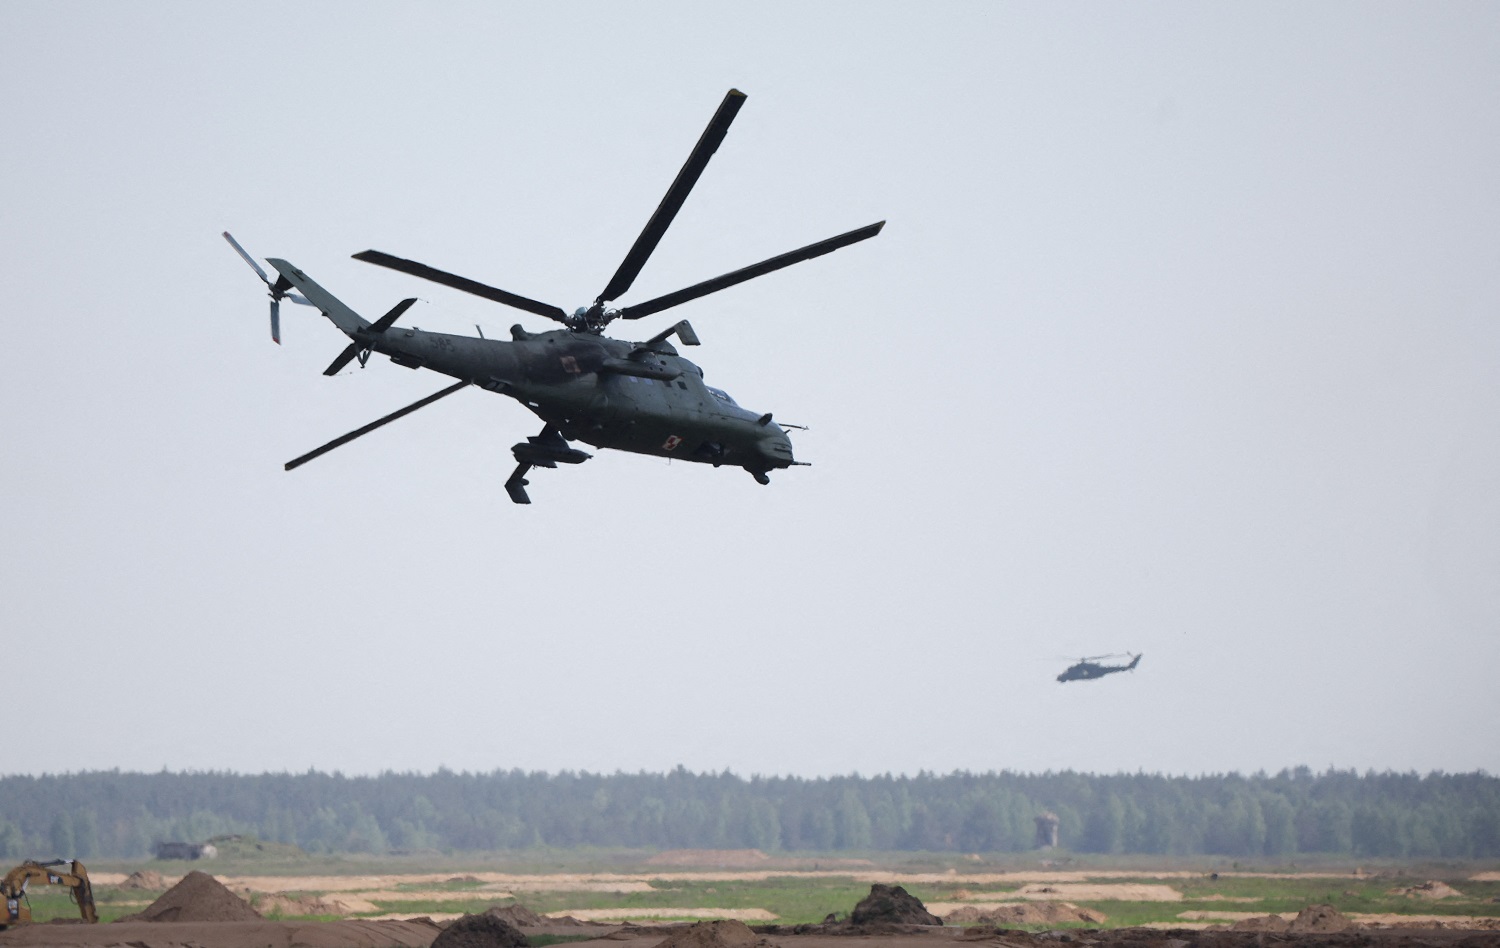 Obserwatorzy: Helikopter rzeczywiście przekroczył granicę polsko-białoruską, ale nie jest jasne, kto był jego właścicielem.